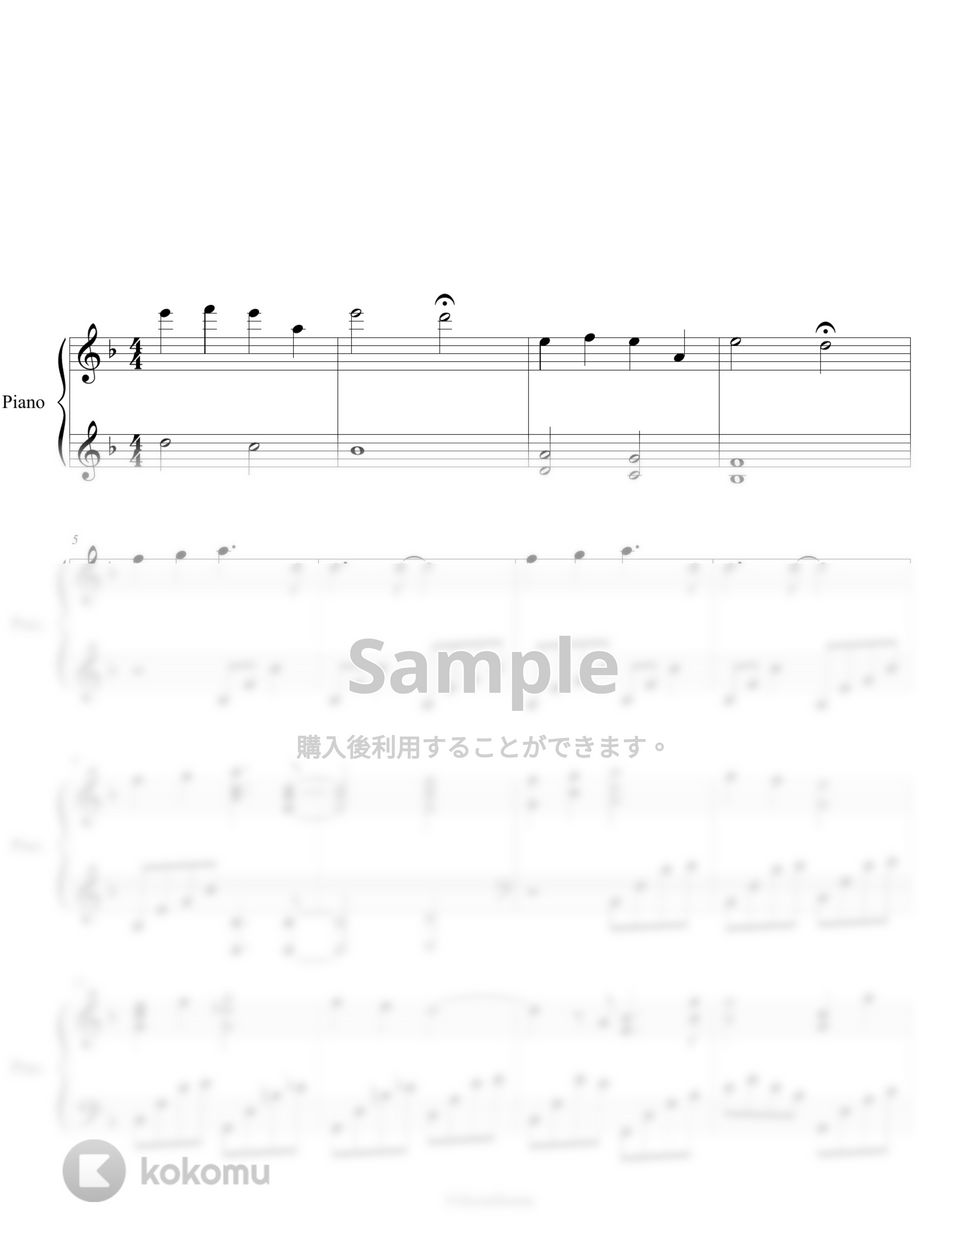 鬼滅の刃 Mugen Train OST - Rengoku's Last Words (cozy ver.) by ifyoulikeme